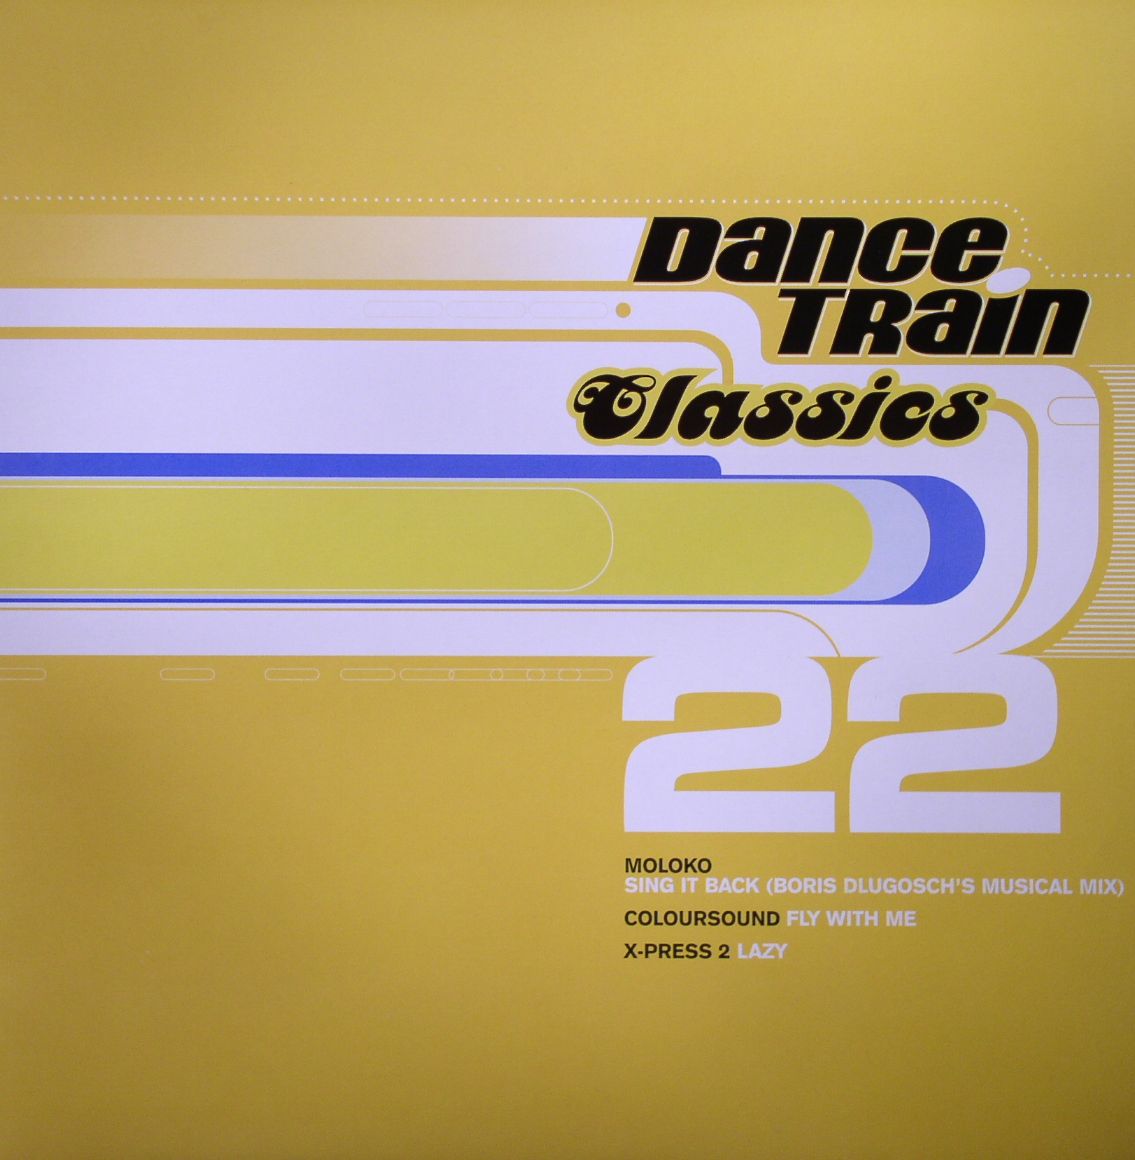 MOLOKO/COLOURSOUND/X PRESS 2 - Dance Train Classics 22